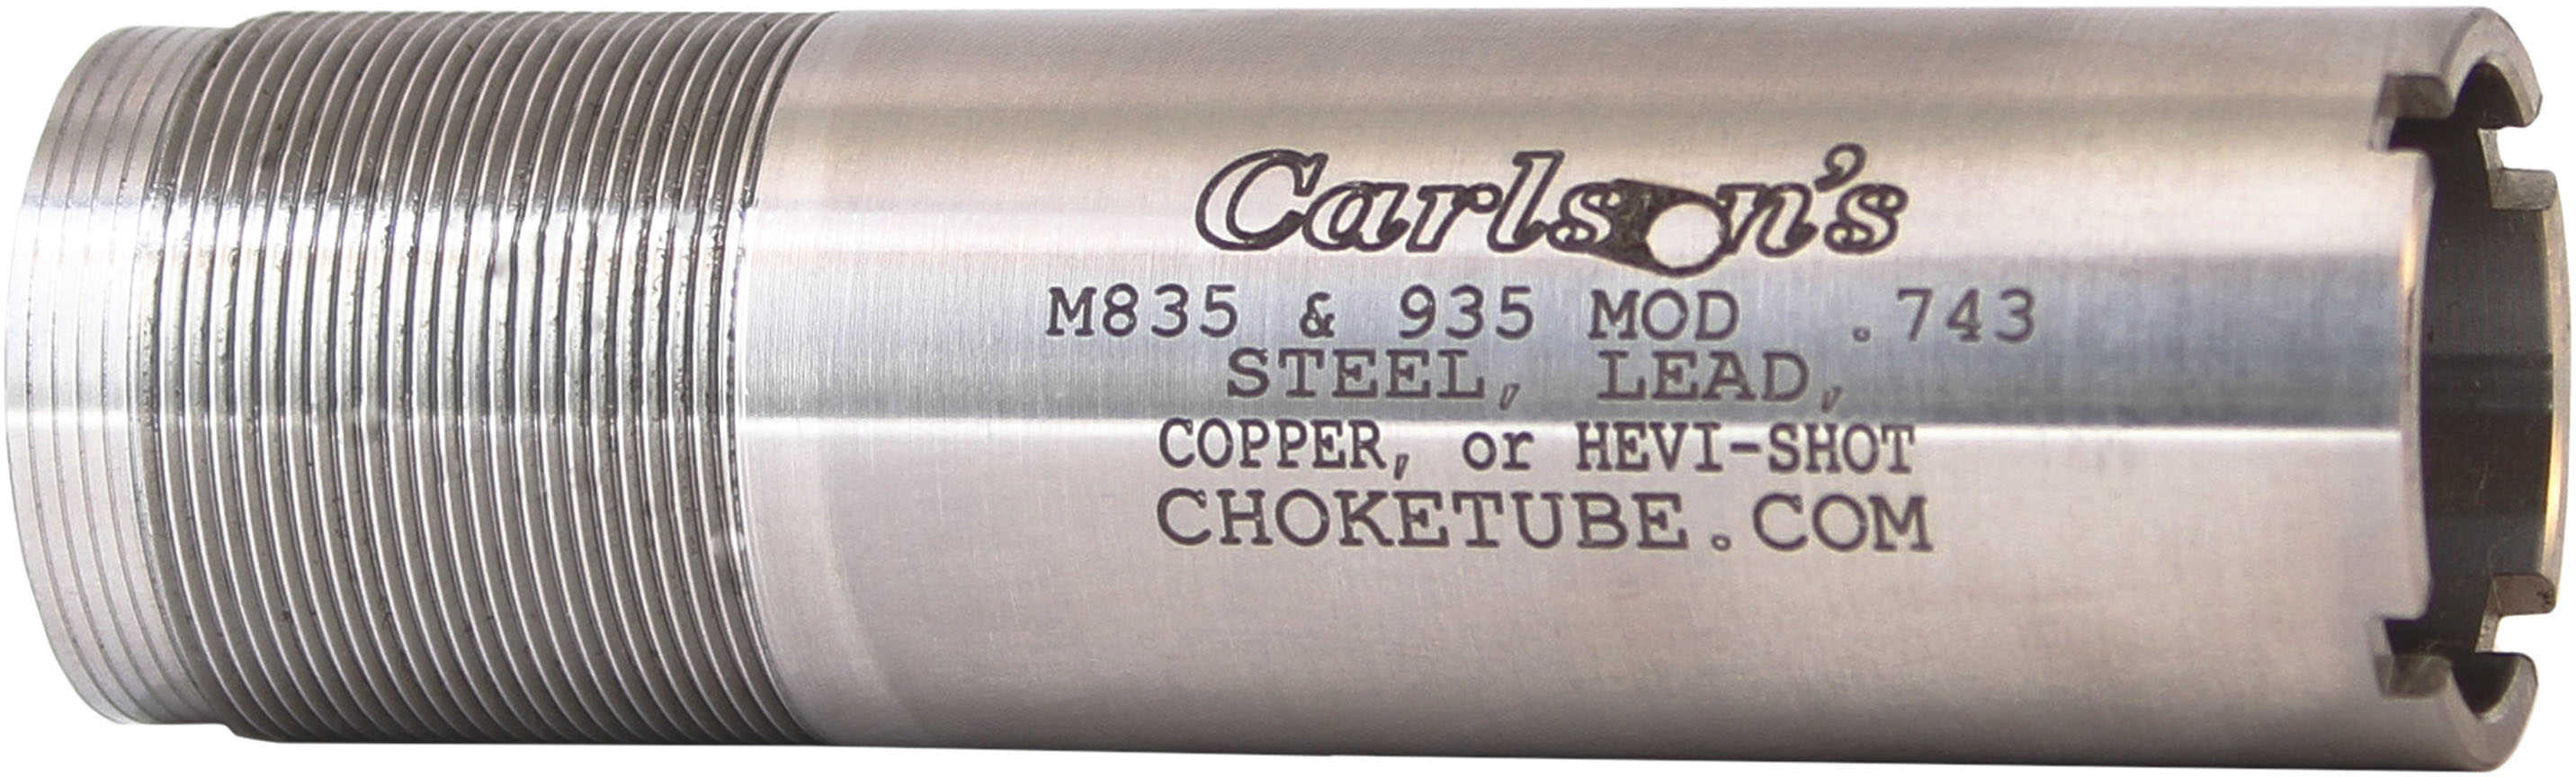 Carlsons Mossberg 835/935 Flush Choke Tube 12 Gauge, Modified Md: 59954